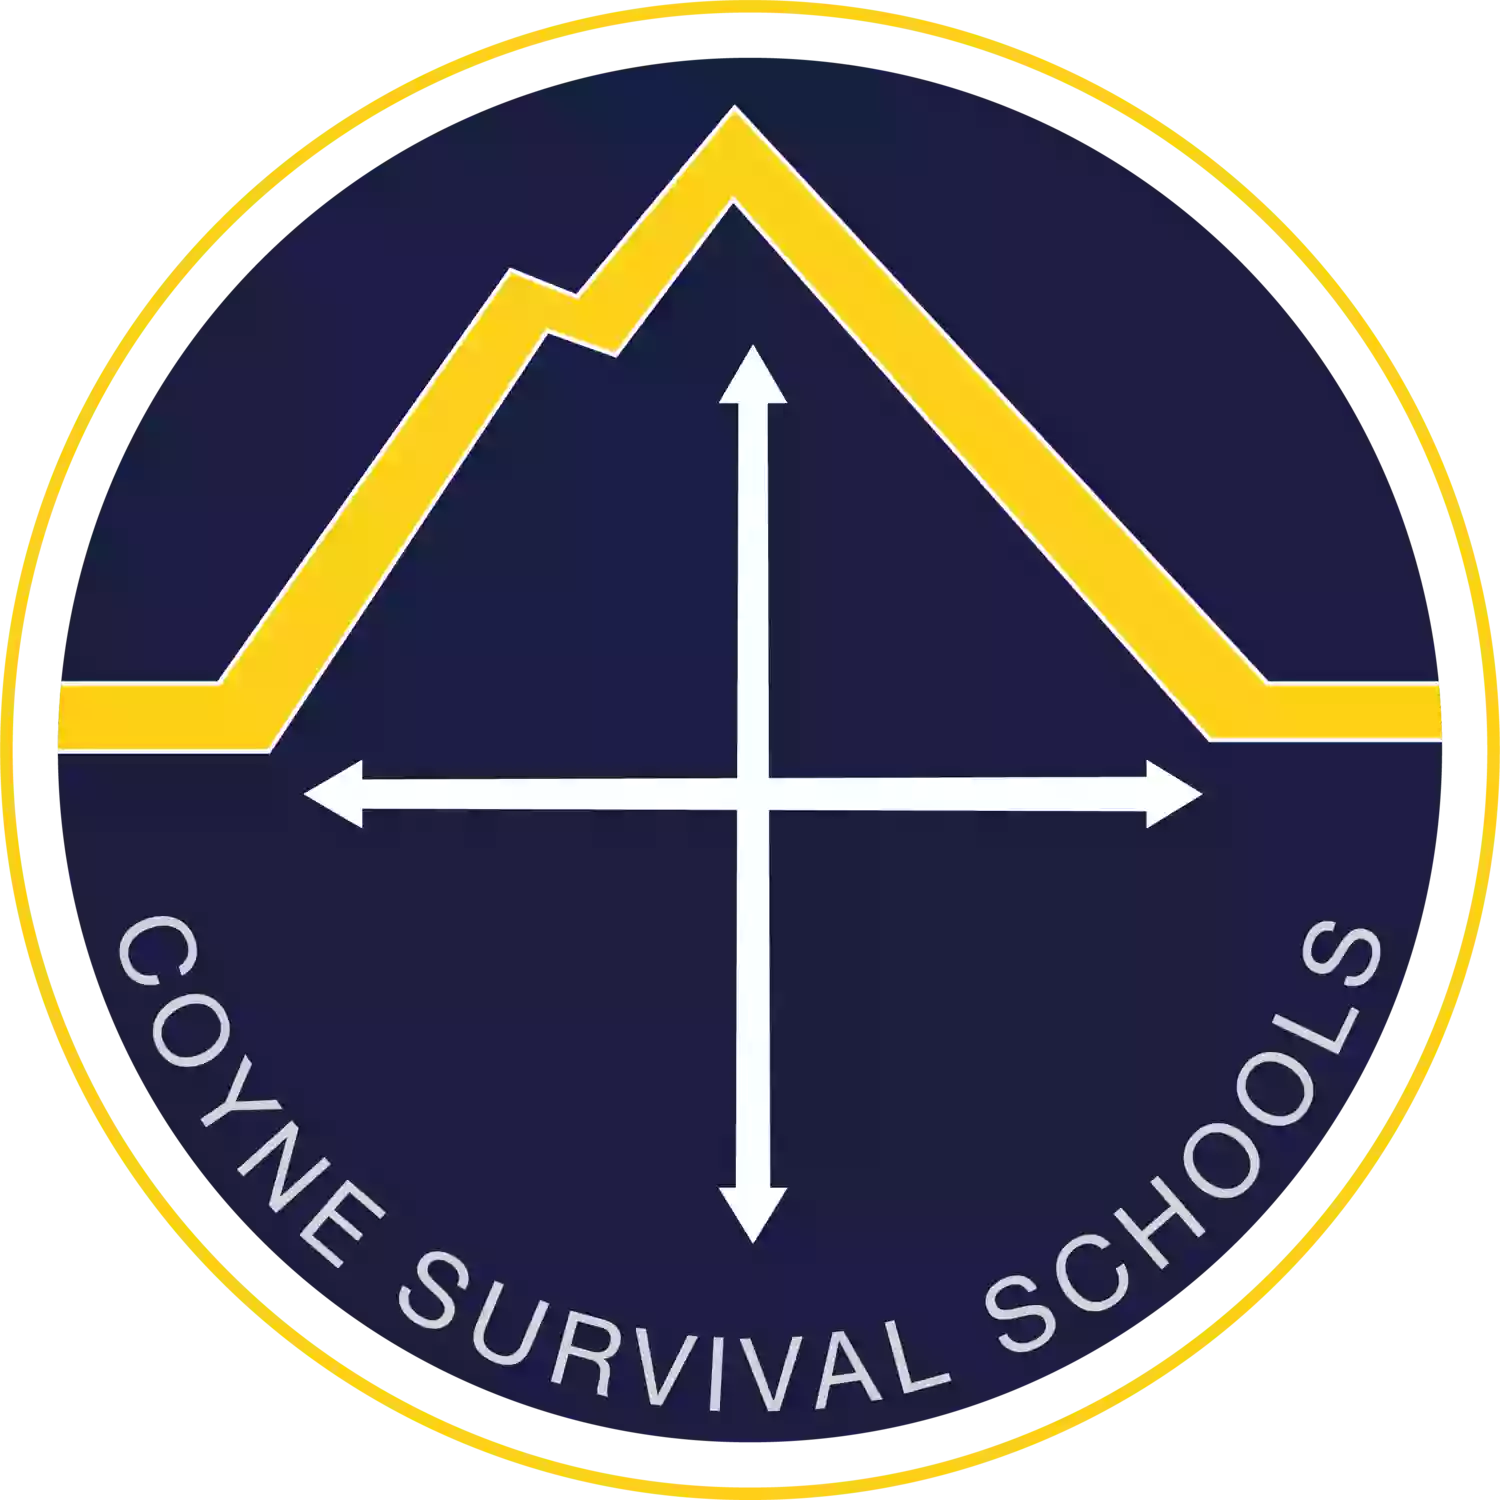 Thomas Coyne Survival Schools